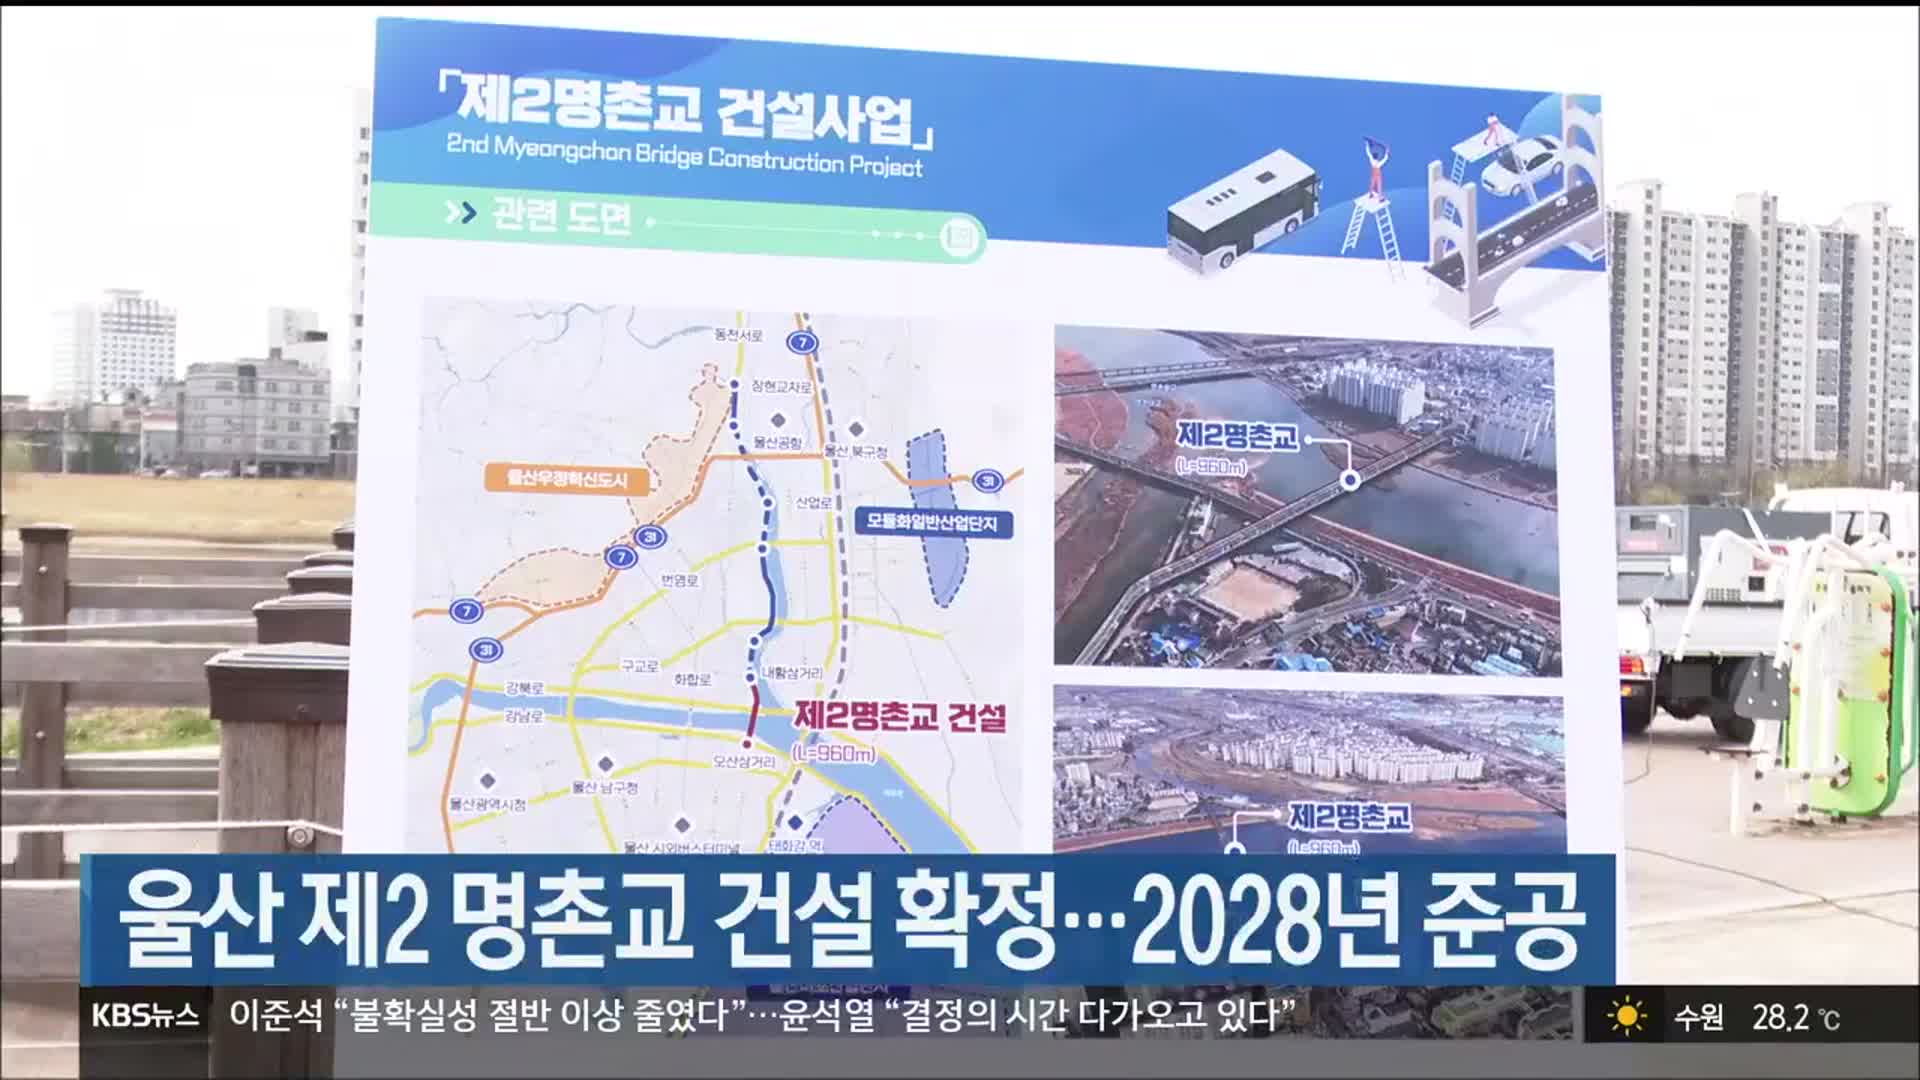 울산 제2 명촌교 건설 확정…2028년 준공